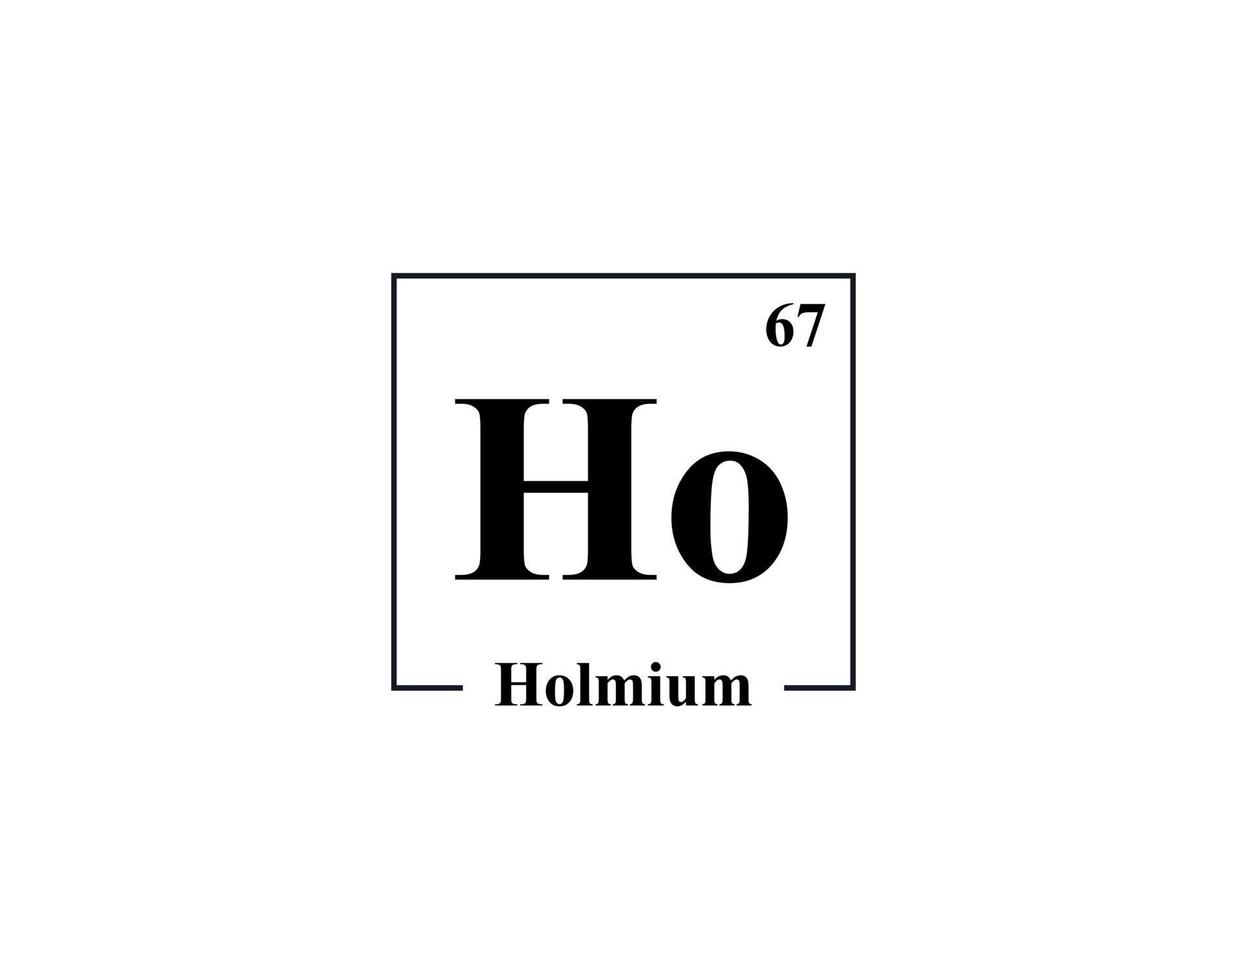 Holmium icon vector. 67 Ho Holmium vector